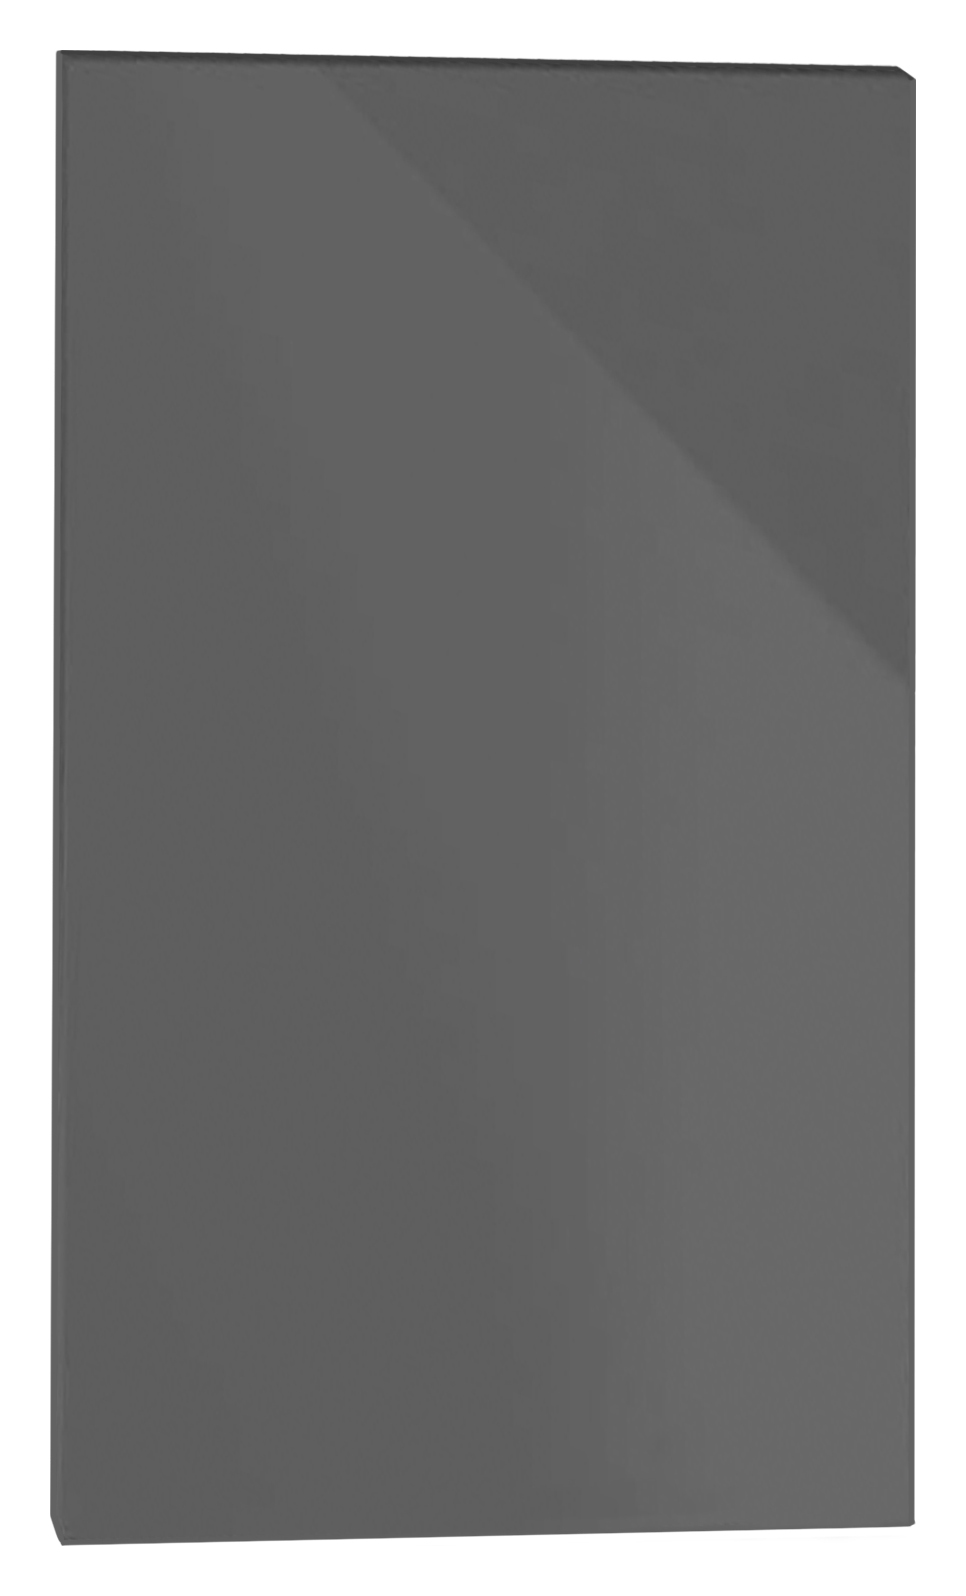 Orlando Dark Grey Gloss Slab Appliance Fascia - 446 x 731mm